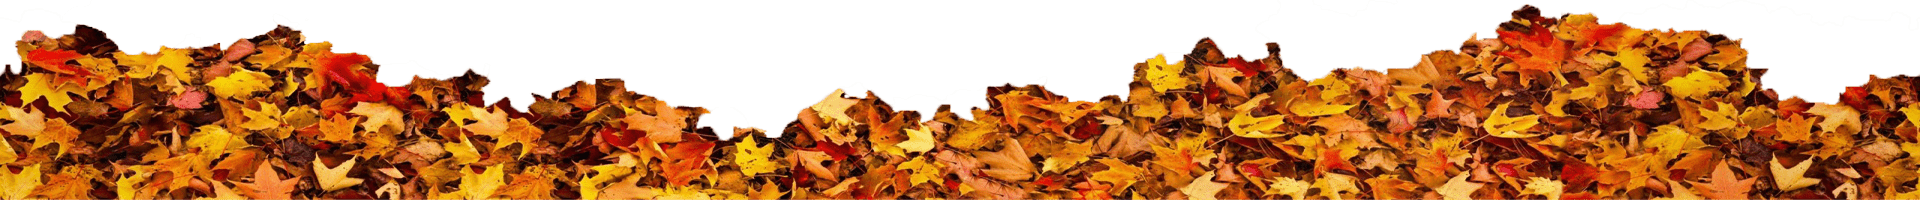 برگ های پاییزی ریخته روی زمین